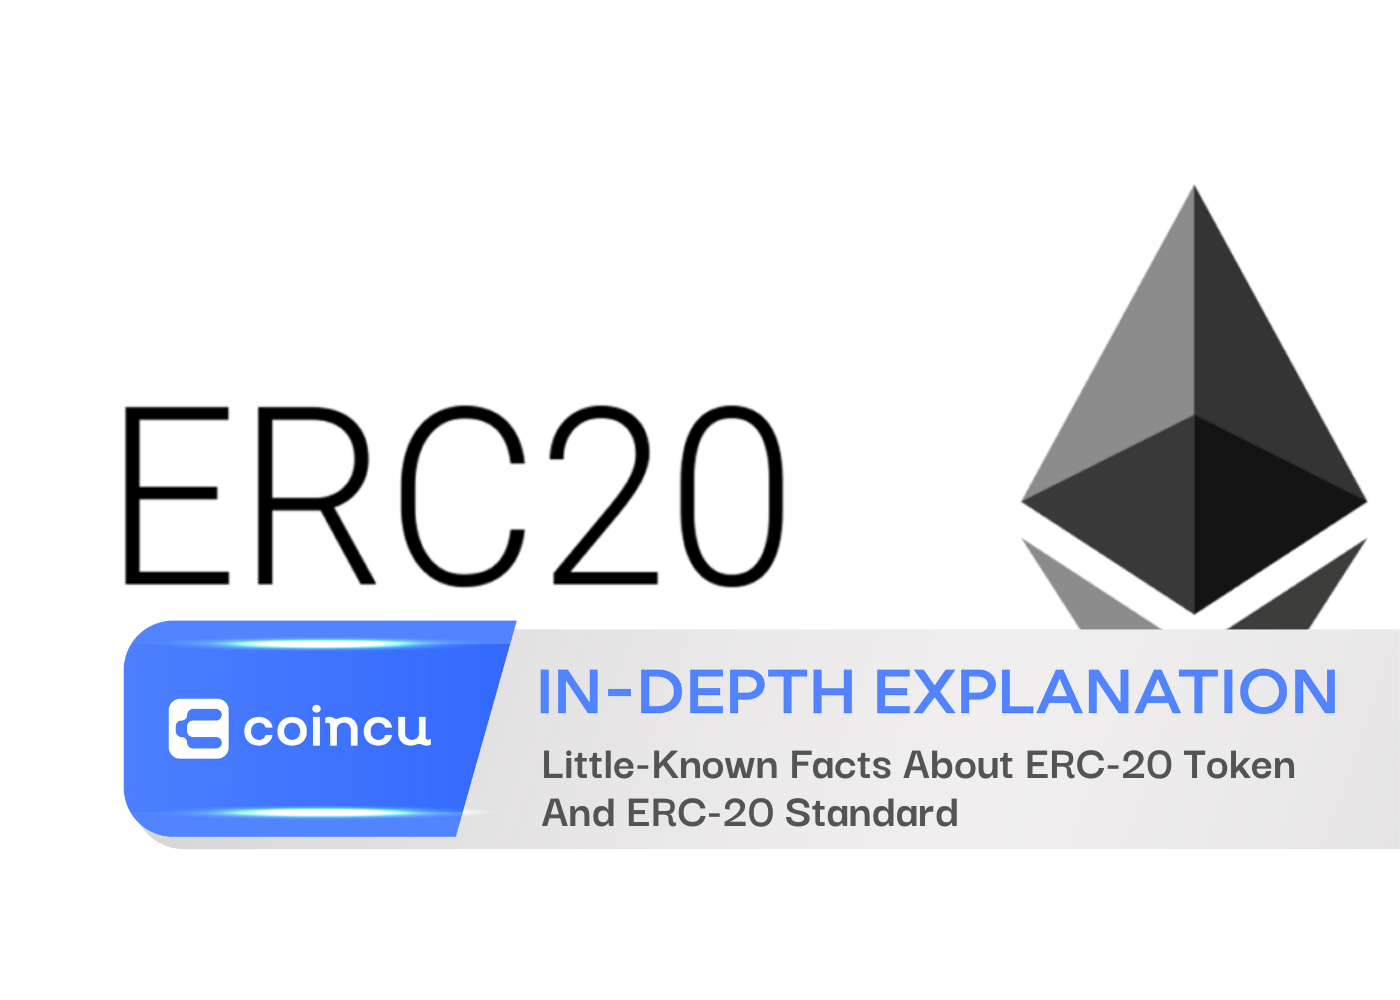 Wenig bekannte Fakten über ERC-20-Token und ERC-20-Standard